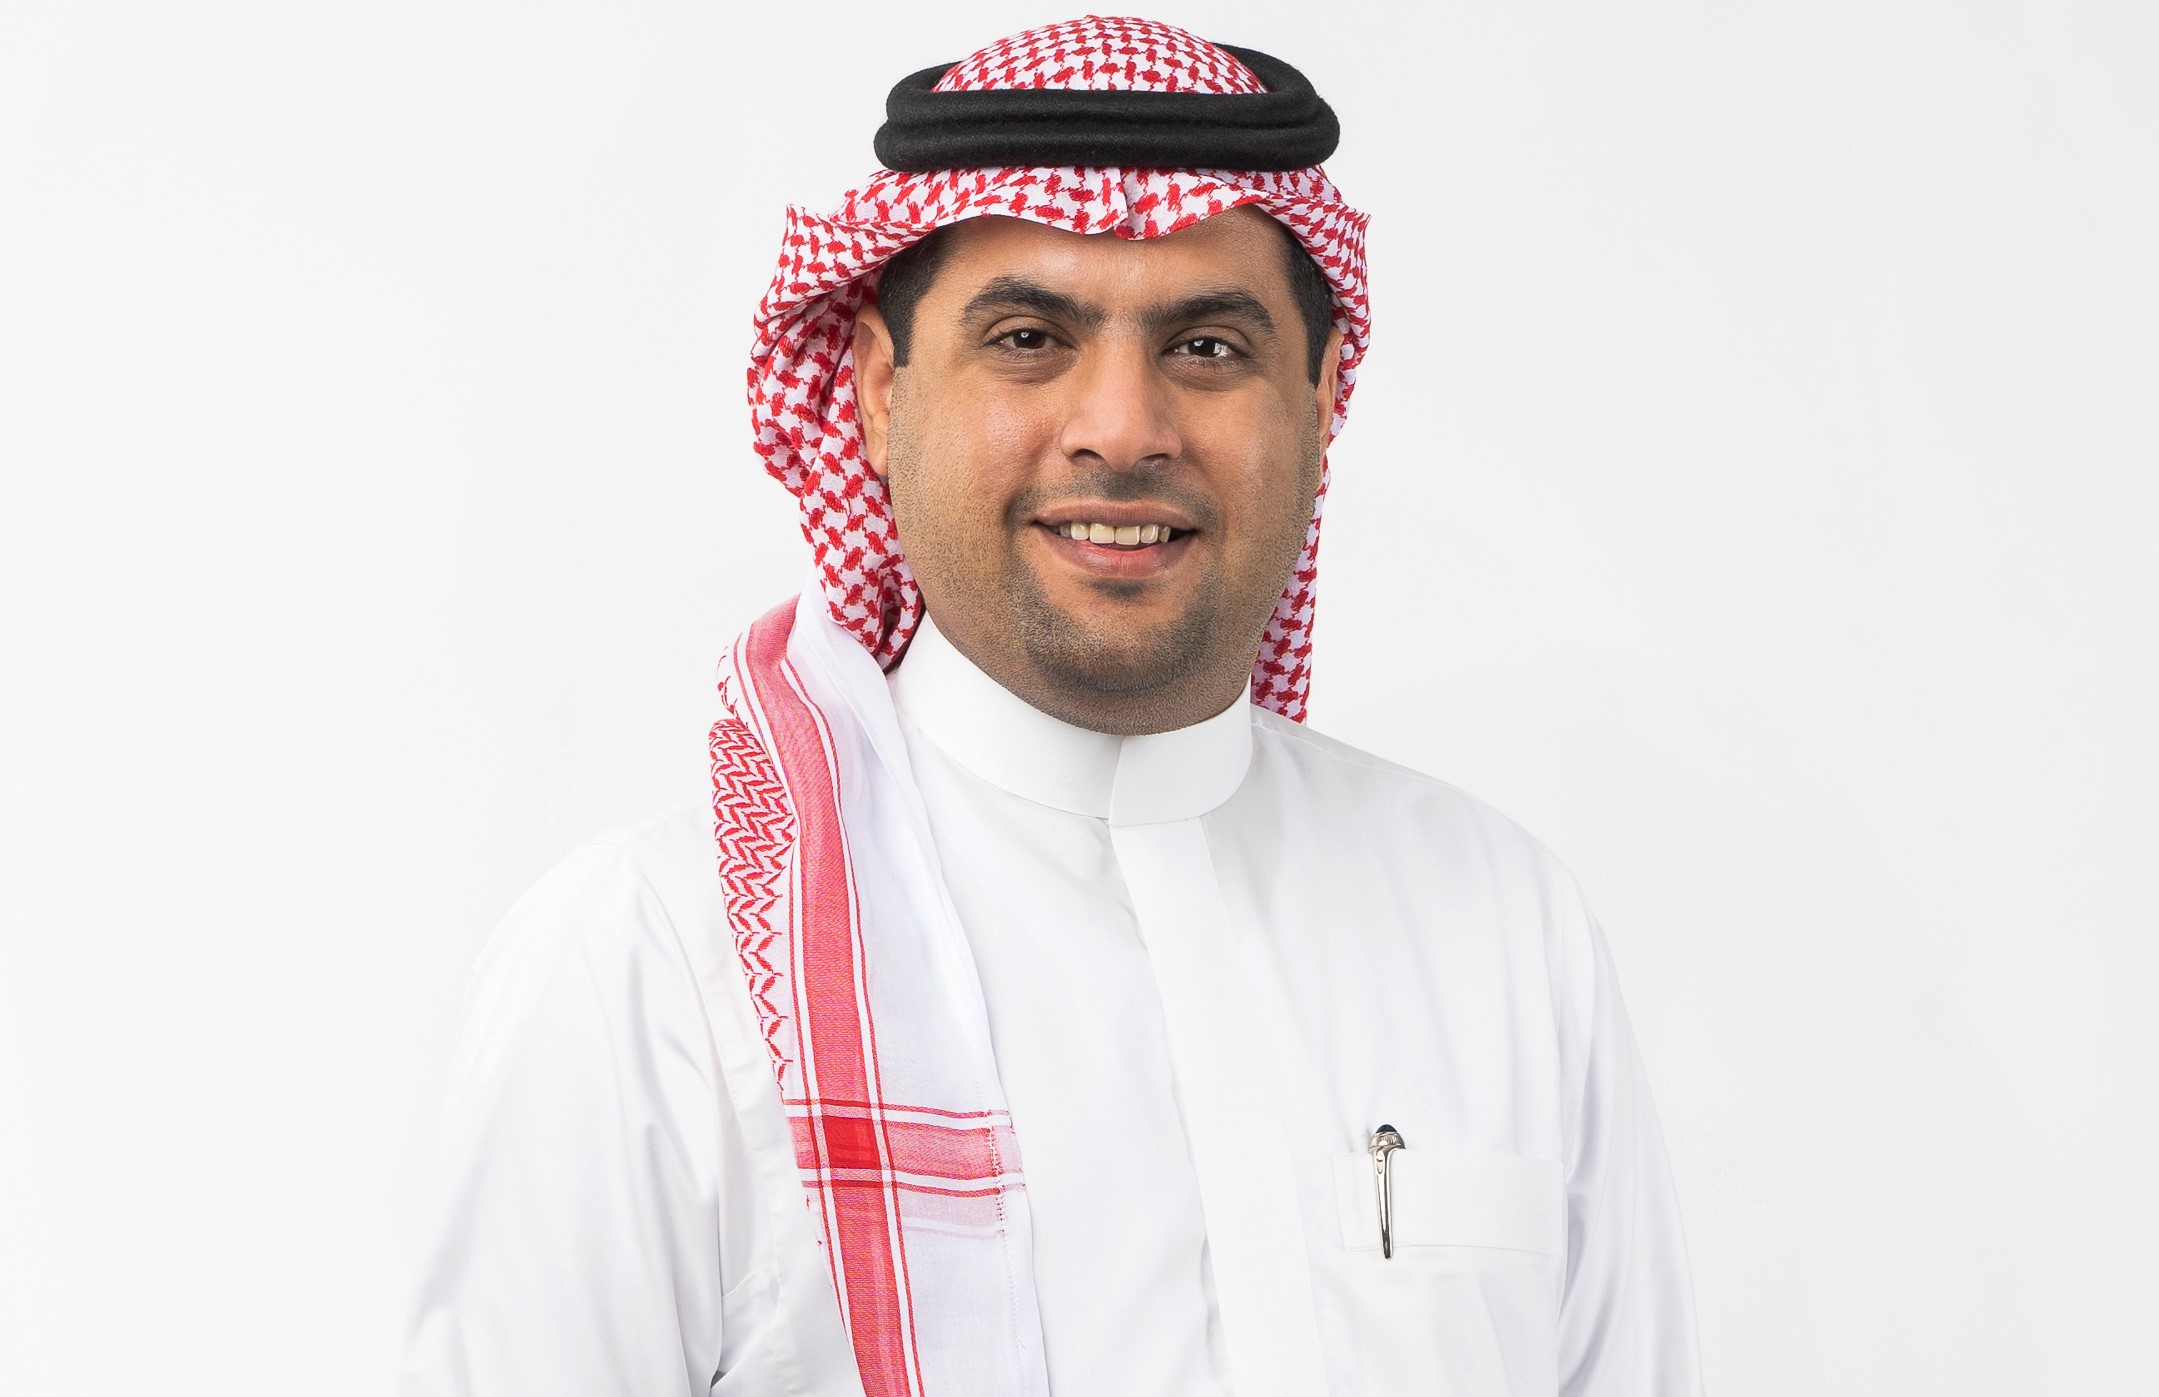 Mr. Salman Maher Al Jabr